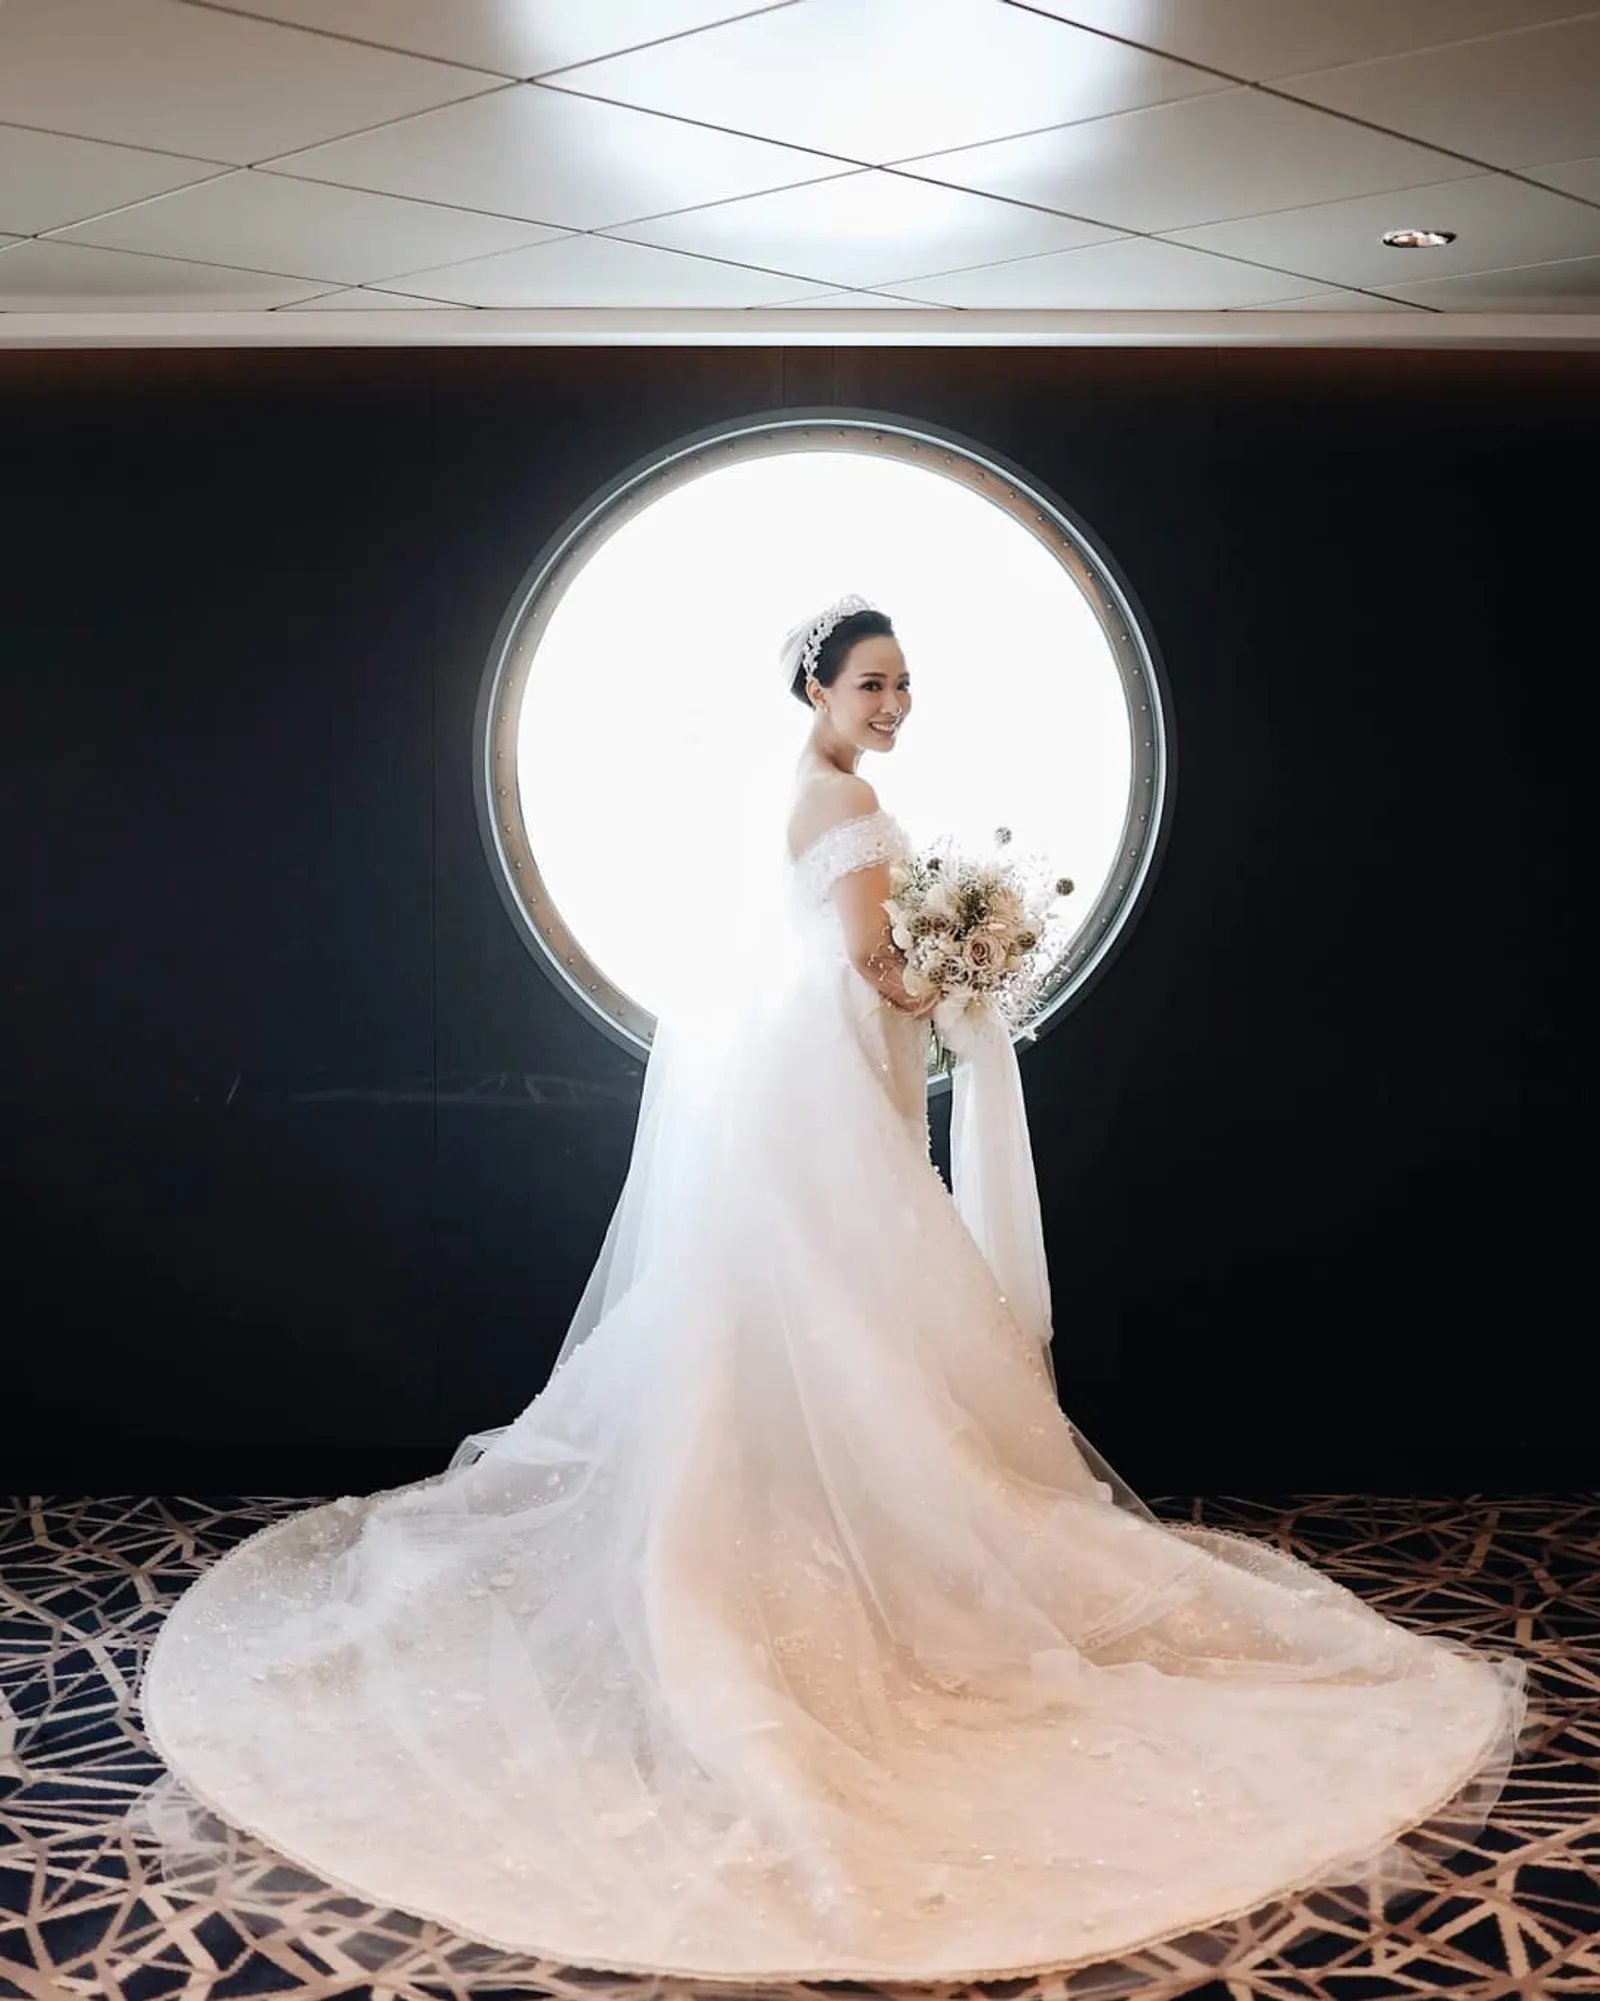 Berbalut Gaun Putih, Elegannya Yuanita di Hari Pernikahannya